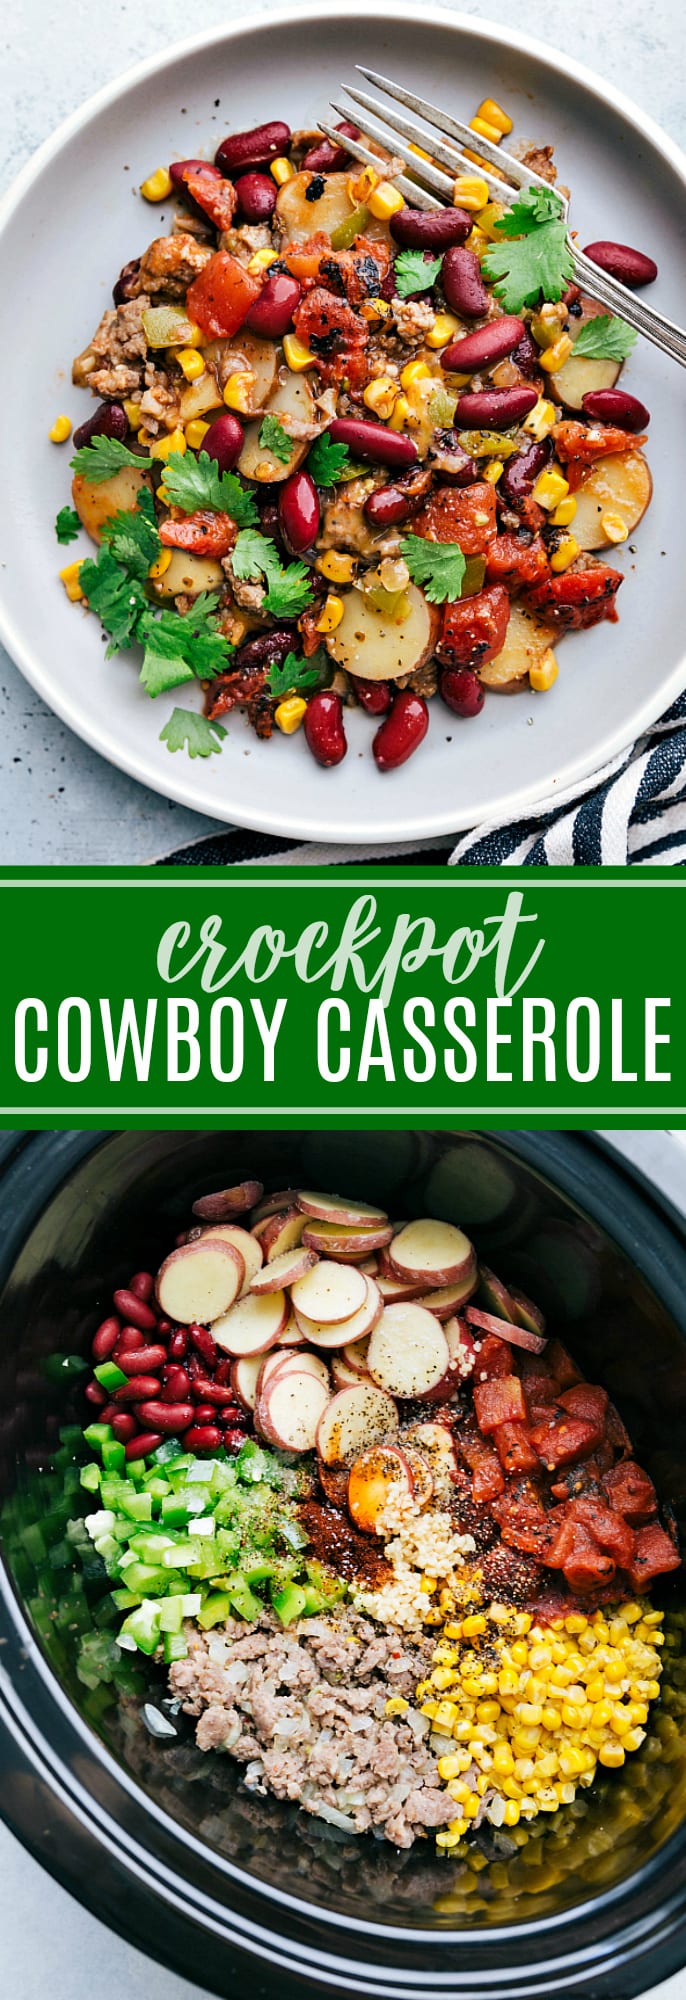 Crockpot Cowboy Casserole (& VIDEO) - BEST Cowboy Casserole Recipe